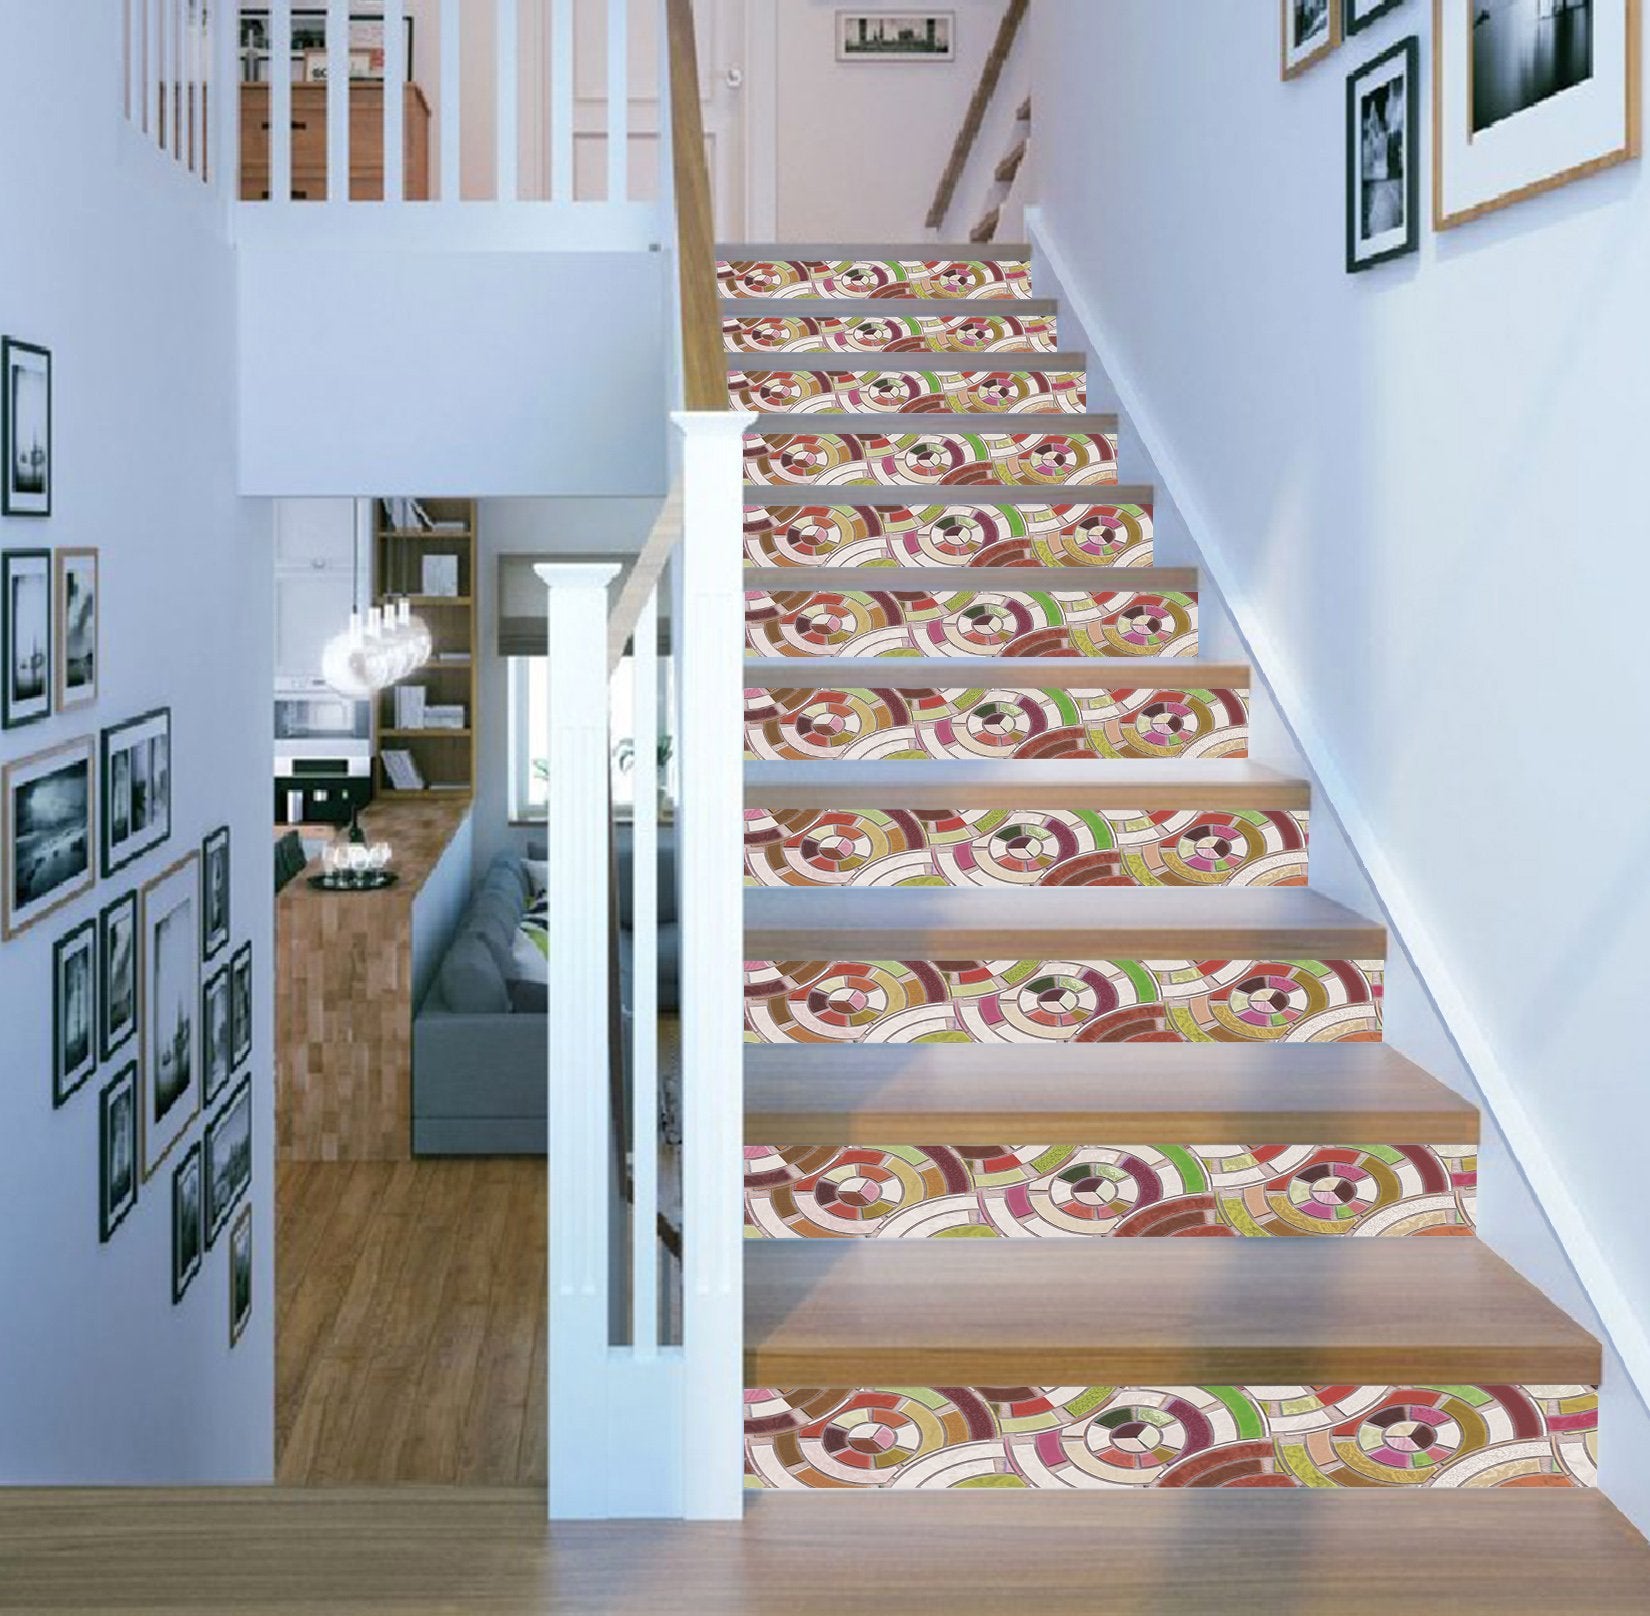 3D Ceramic Tile 7201 Stair Risers Wallpaper AJ Wallpaper 